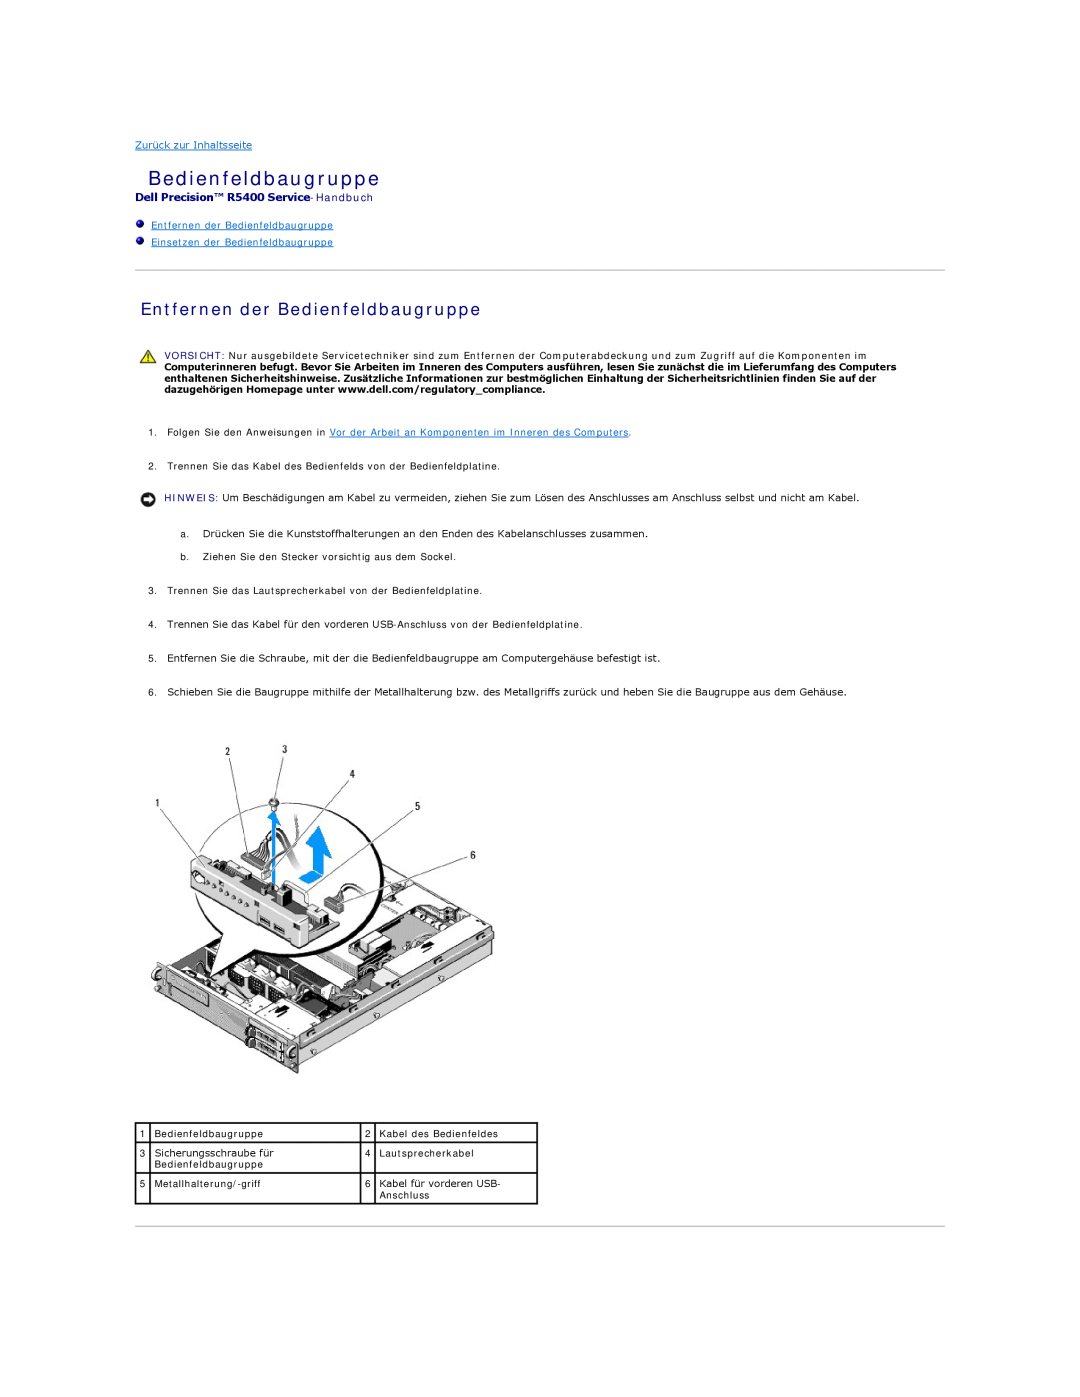 Dell 5400 manual Entfernen der Bedienfeldbaugruppe Einsetzen der Bedienfeldbaugruppe, Zurück zur Inhaltsseite 